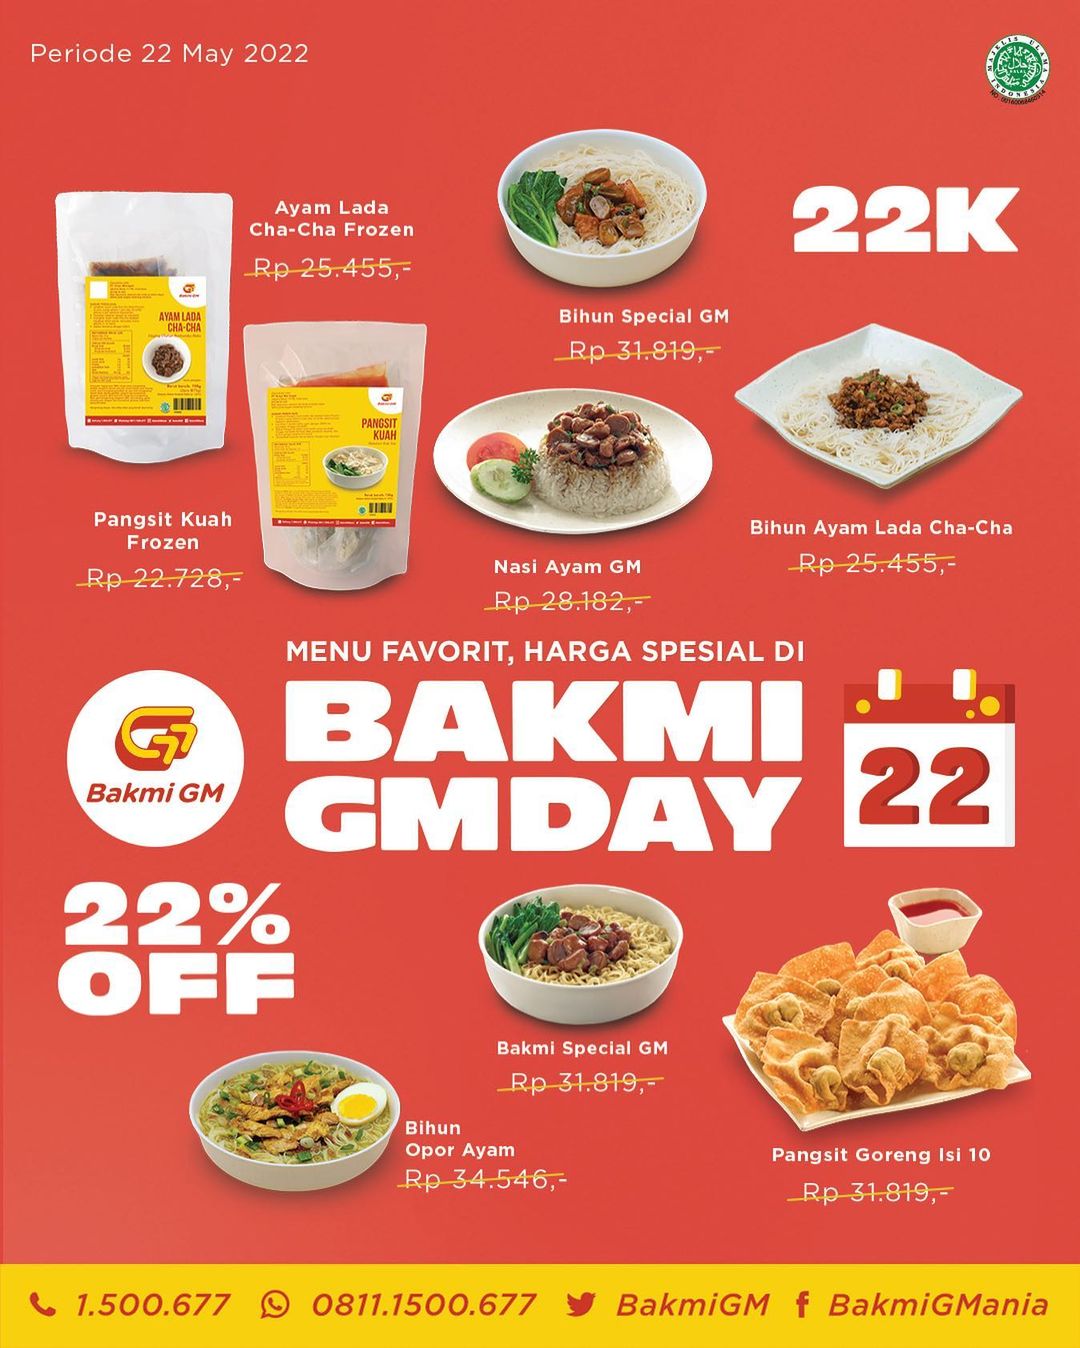 Promo BAKMI GM DAY - Harga Spesial Rp. 22RIBU dan 22% OFF  untuk Menu Favorit Pilihan